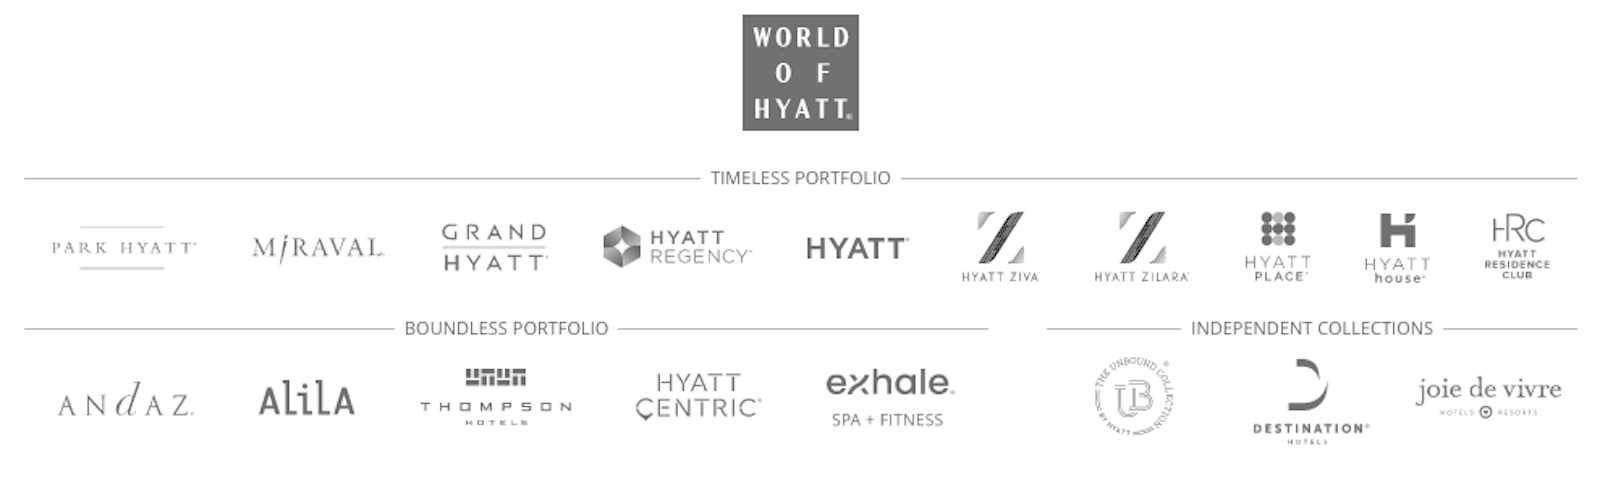 Hyatt hotel brands